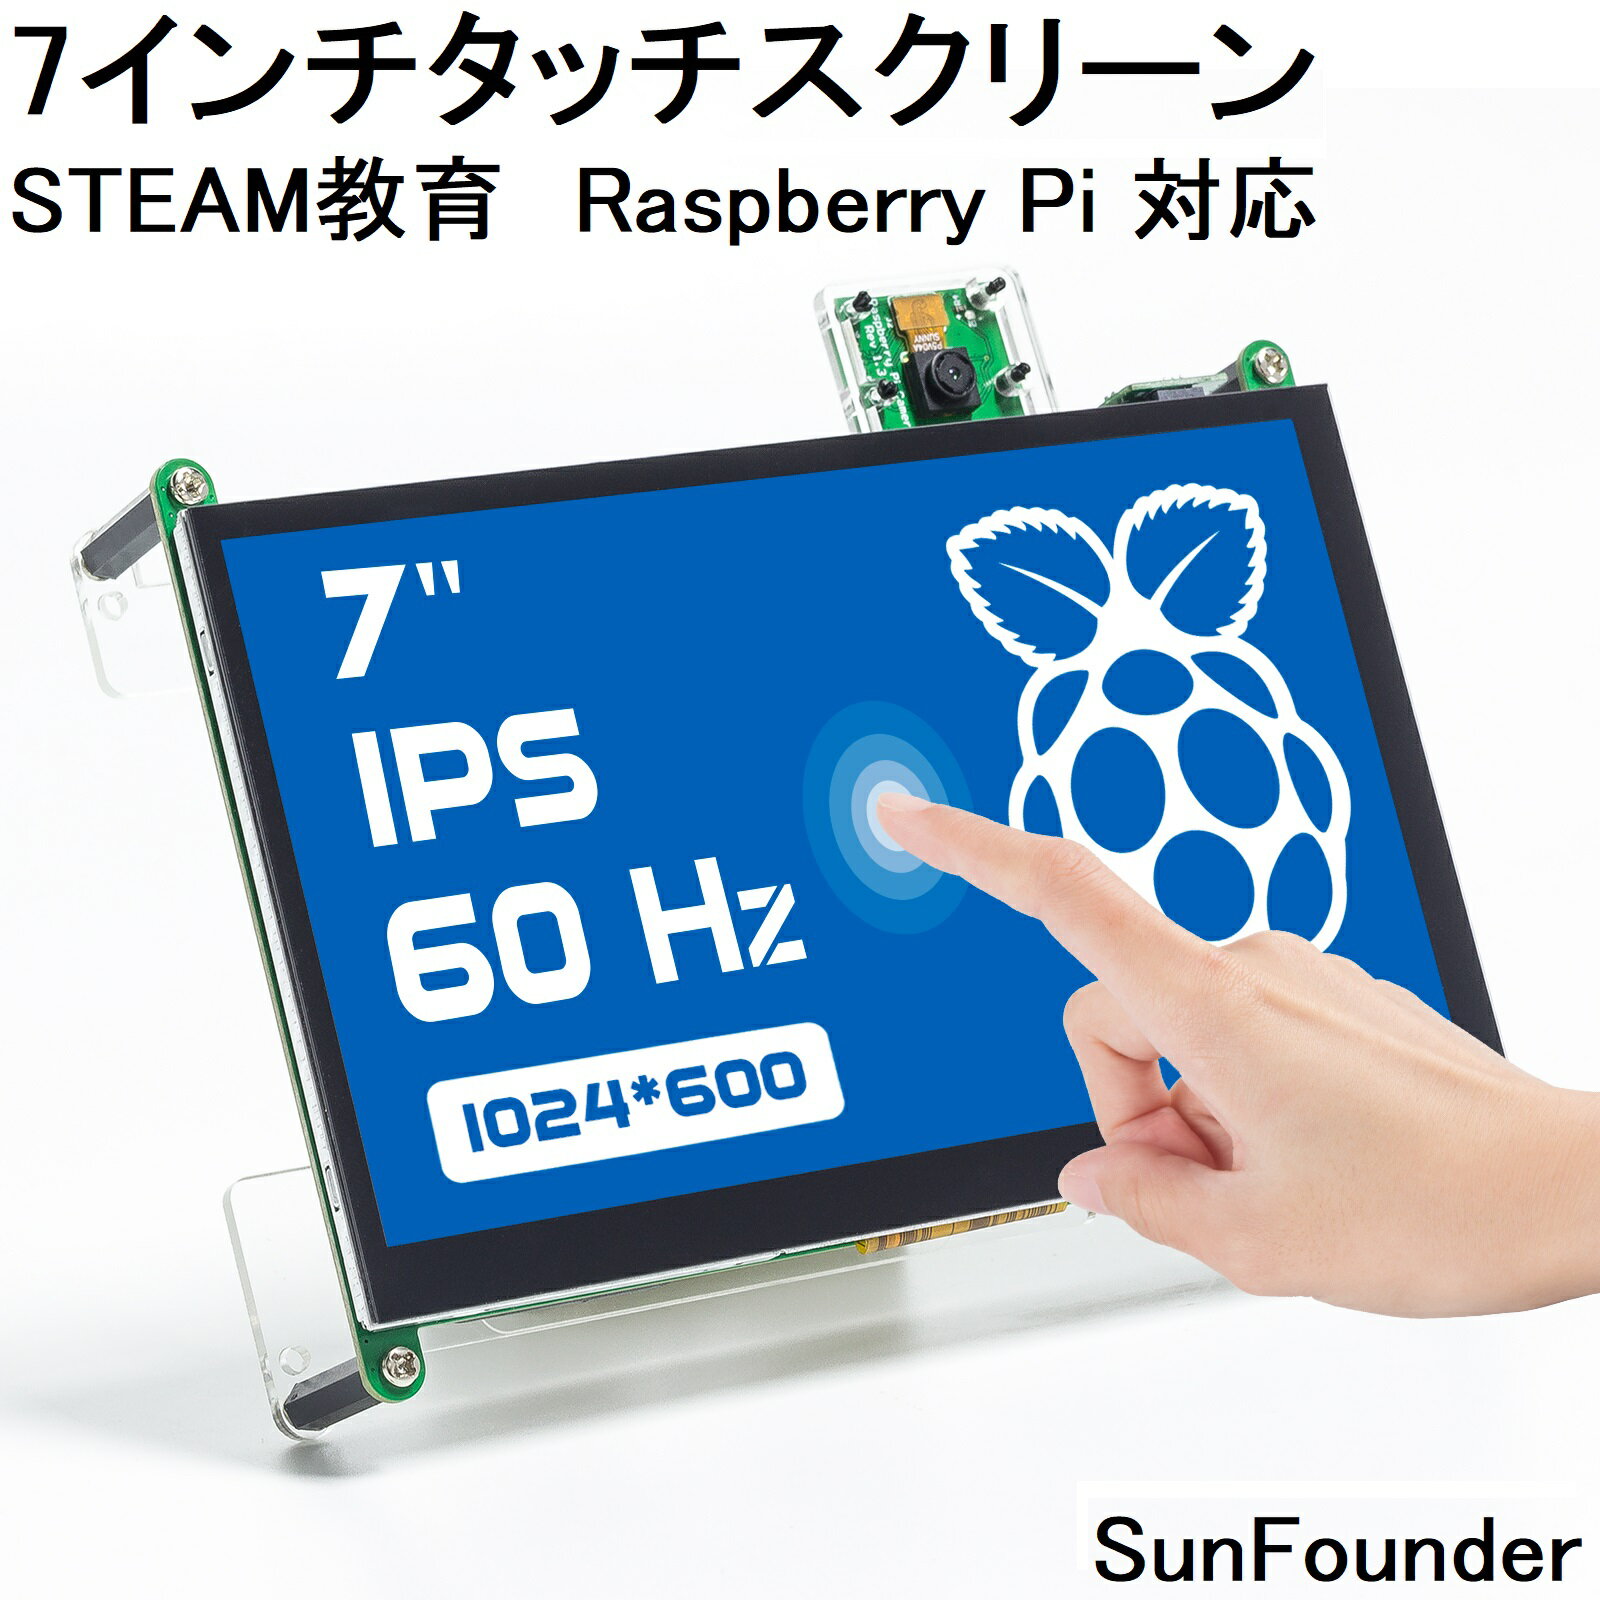 Raspberry Pi スクリーン 7インチ IPS ディスプレイ 1024X600 タッチスクリーン HDMI USB ポータブル ミニ モニター 7 inch Raspberry Pi モニター スタンド デュアルスピーカー付き SunFounder